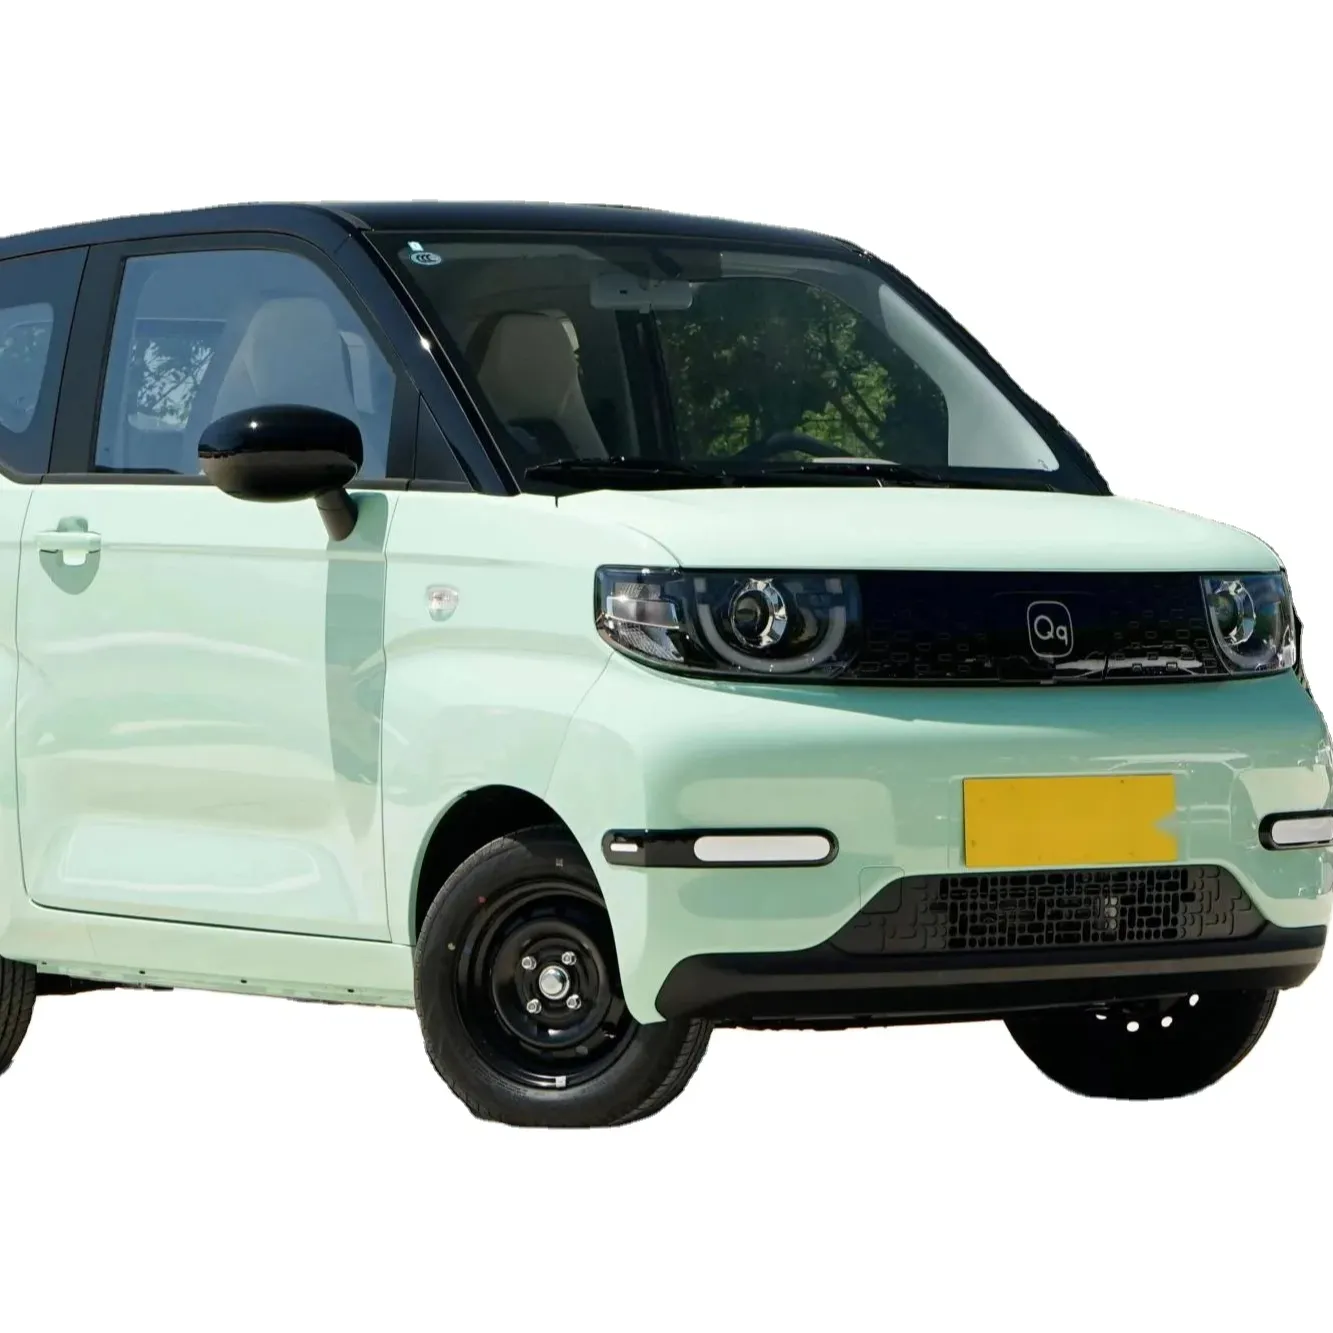 Mini voiture électrique Chery Qq Ice Cream 3 portes 4 places 20Kw Chargement rapide Ev Car Mini New Energy Vehicle Petites voitures électriques